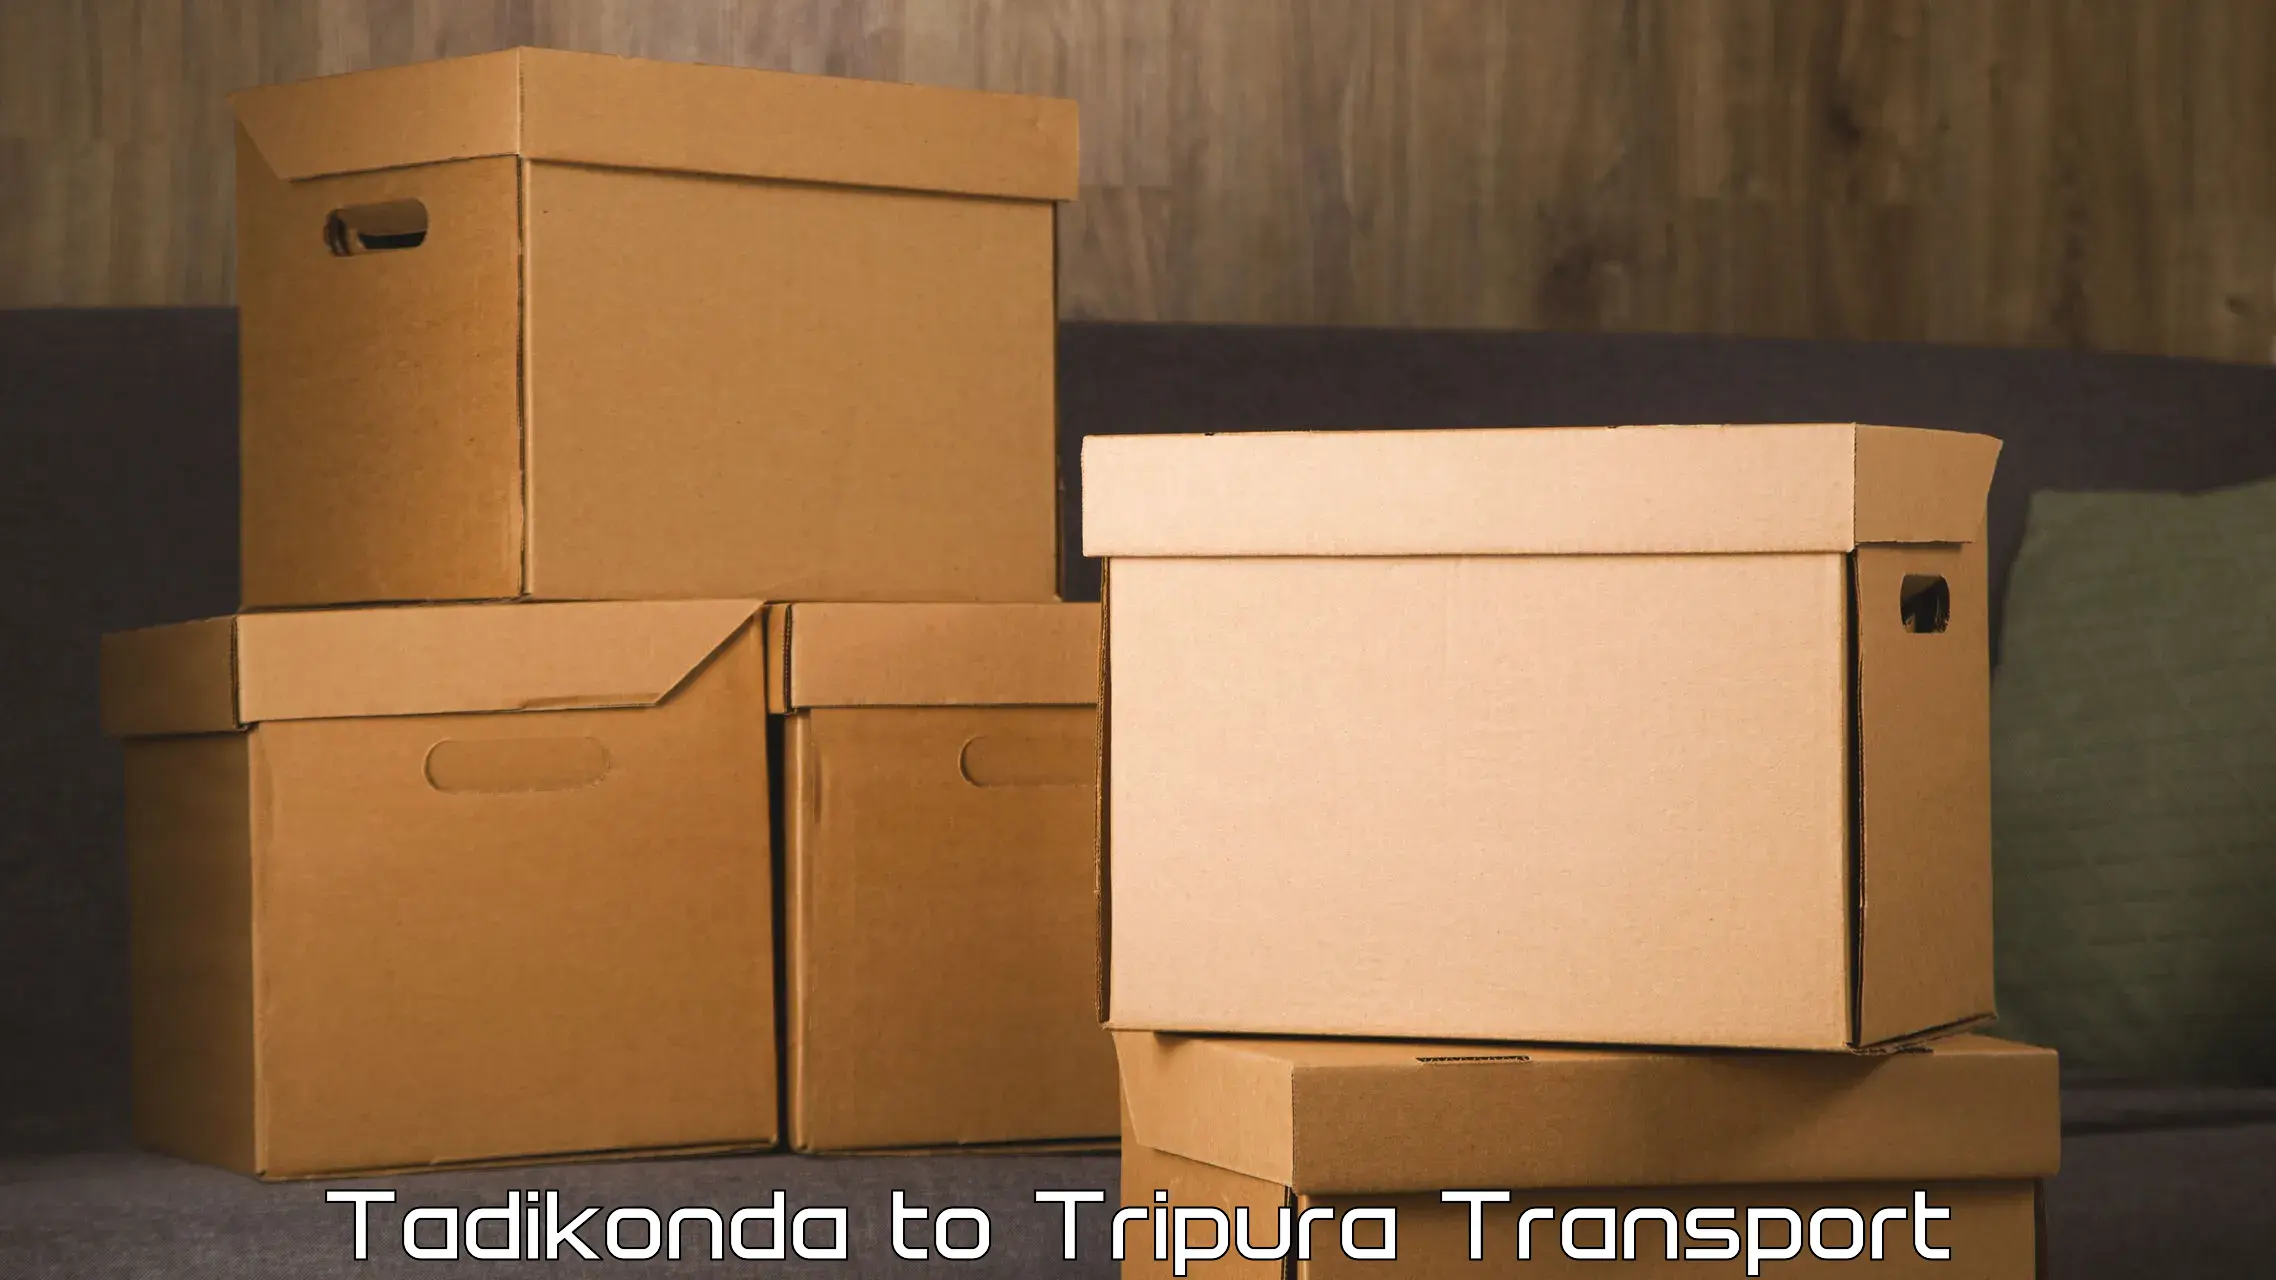 Two wheeler parcel service Tadikonda to Agartala